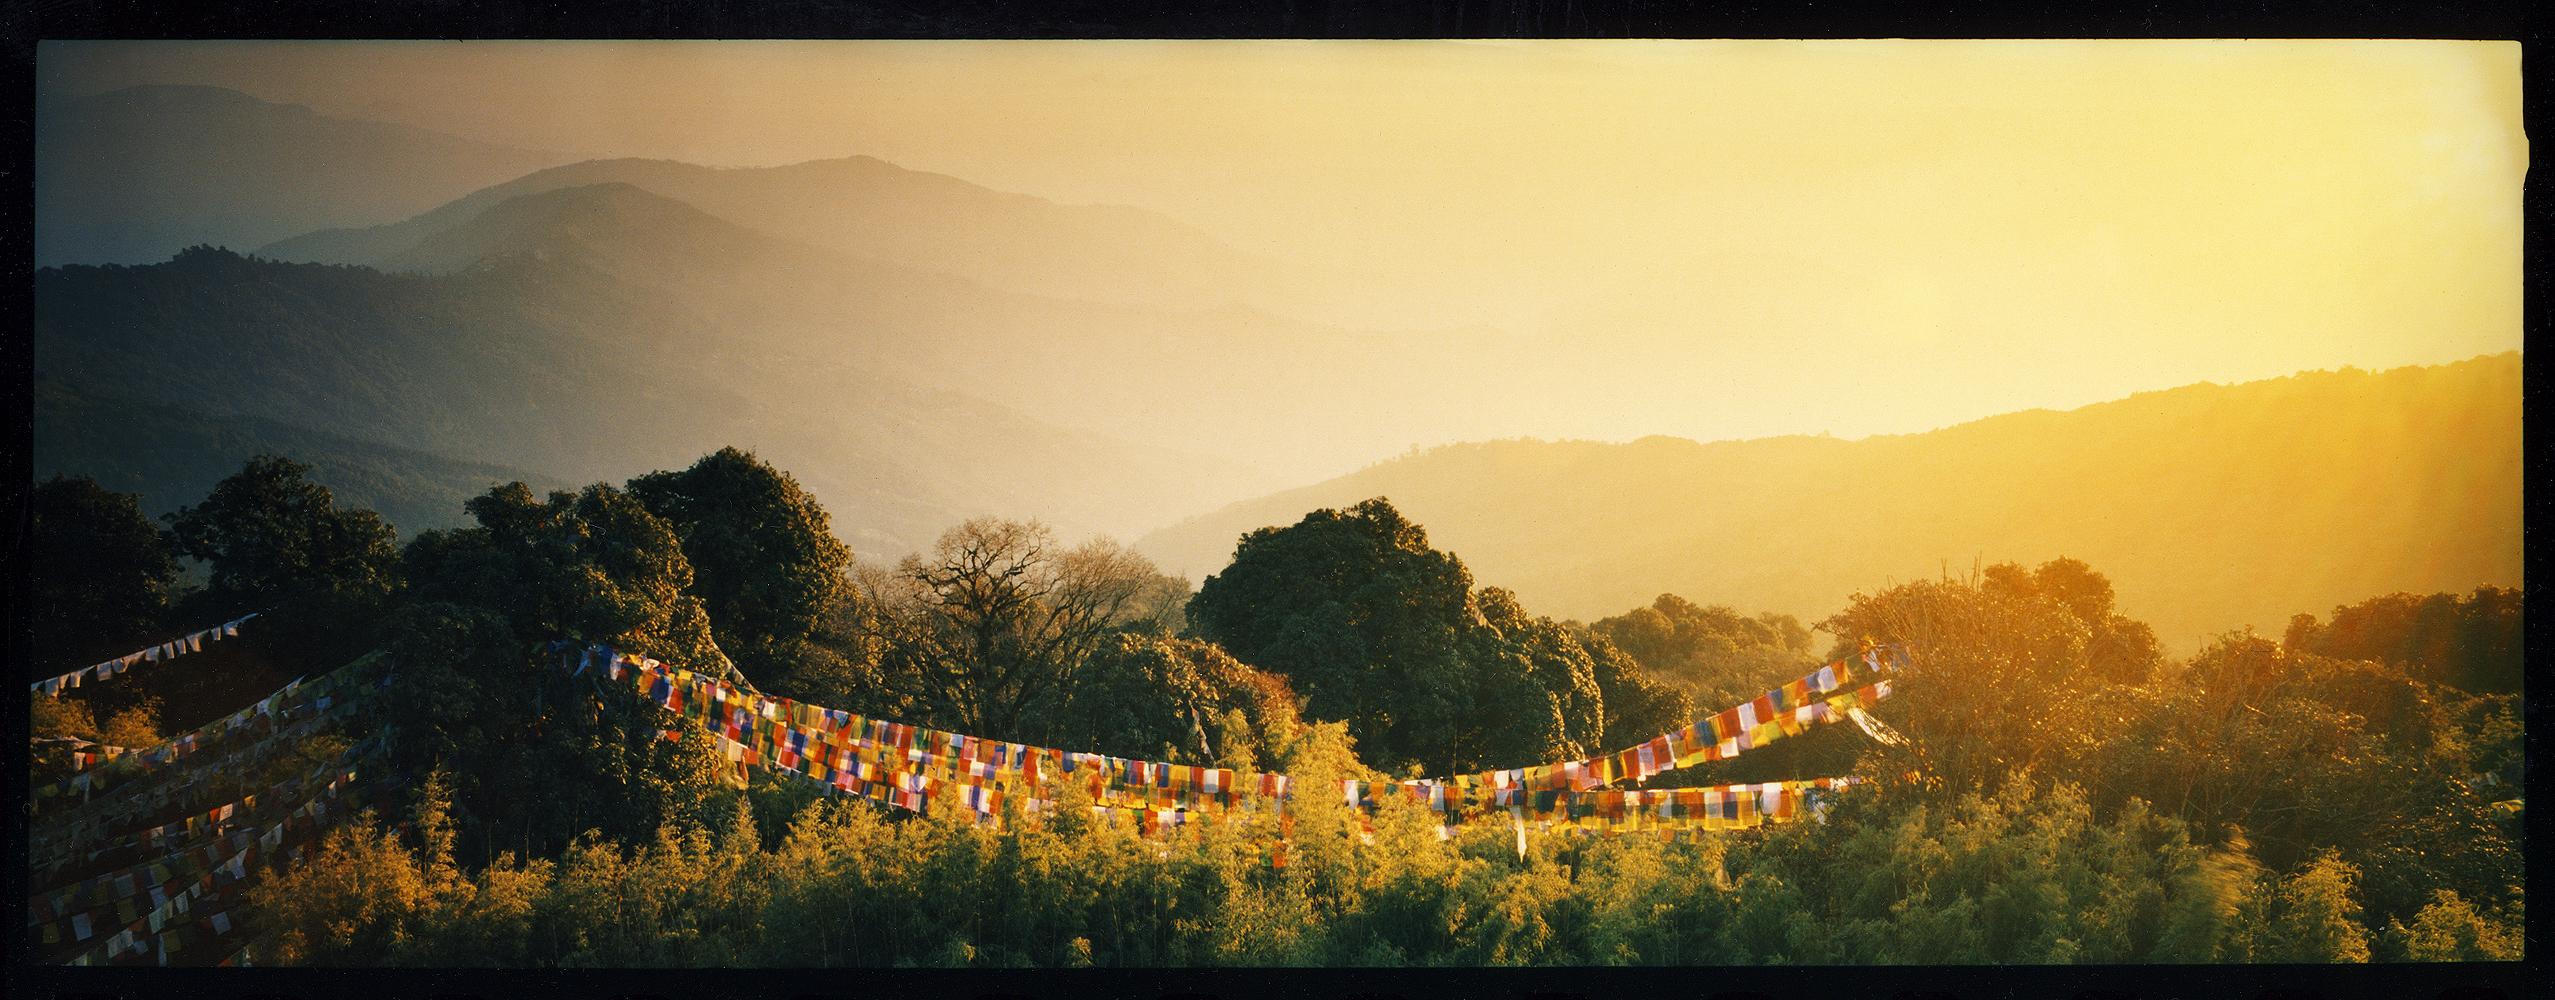 Landscape Print Richard Heeps - Drapeau de prières, Darjeeling, - Nuage, photographie de paysage en couleur